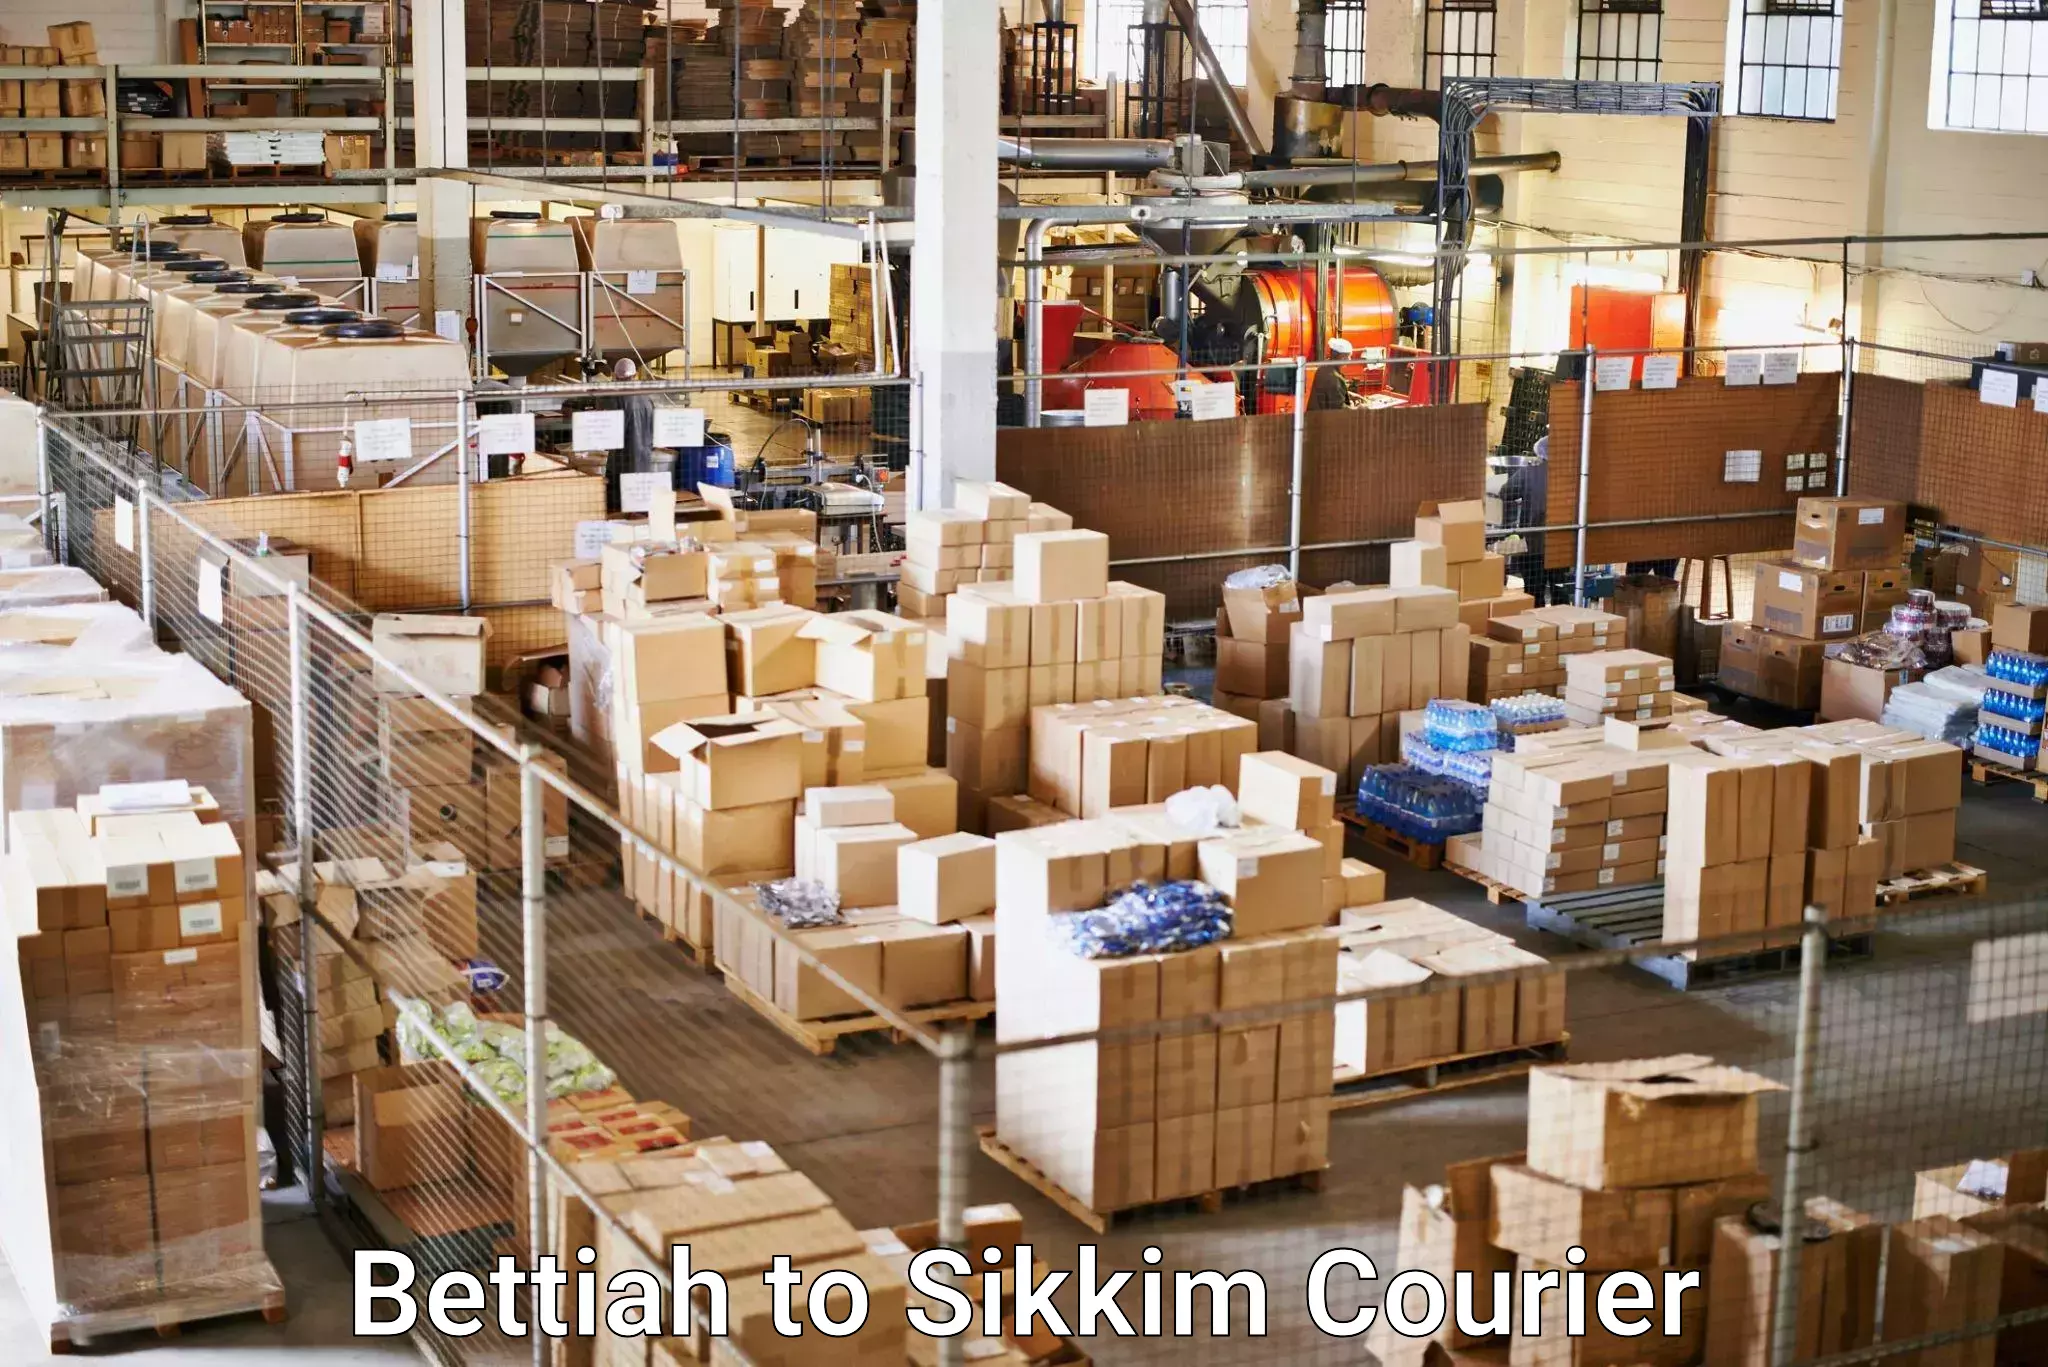 Courier service comparison Bettiah to NIT Sikkim